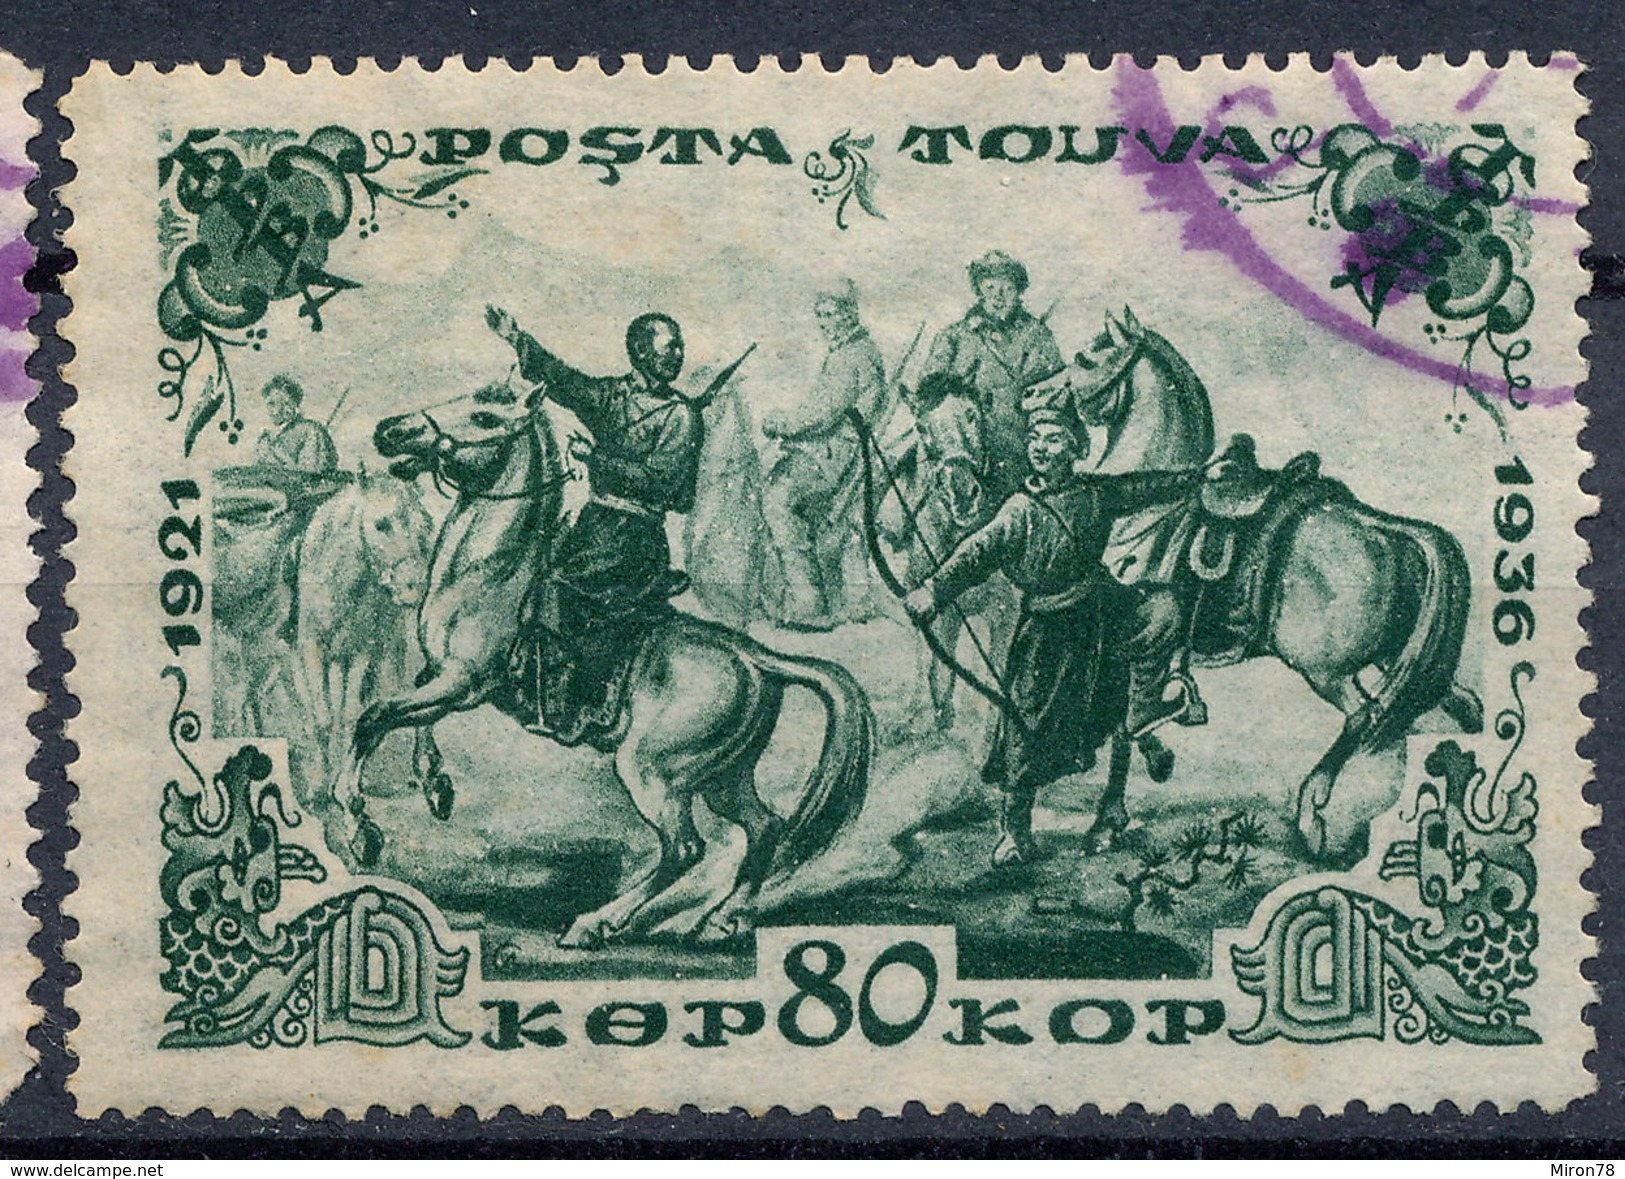 Stamp Tannu Tuva 1936 Used Lot#96 - Tuva